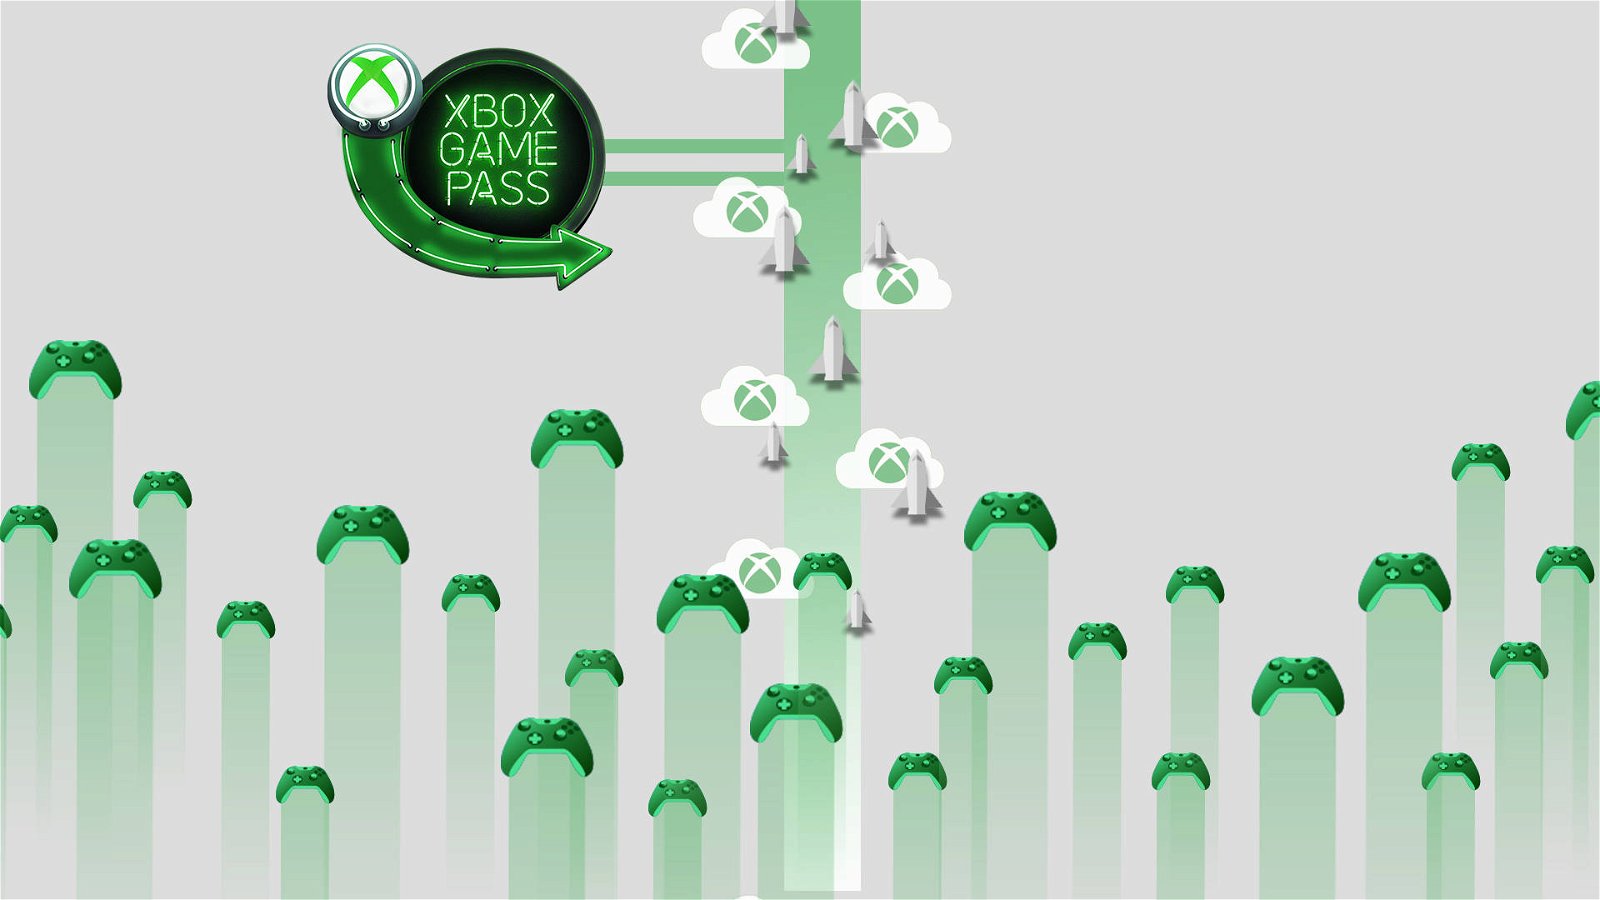 Immagine di Da Game Pass a xCloud, come Microsoft sta rivoluzionando il gaming digitale con Xbox